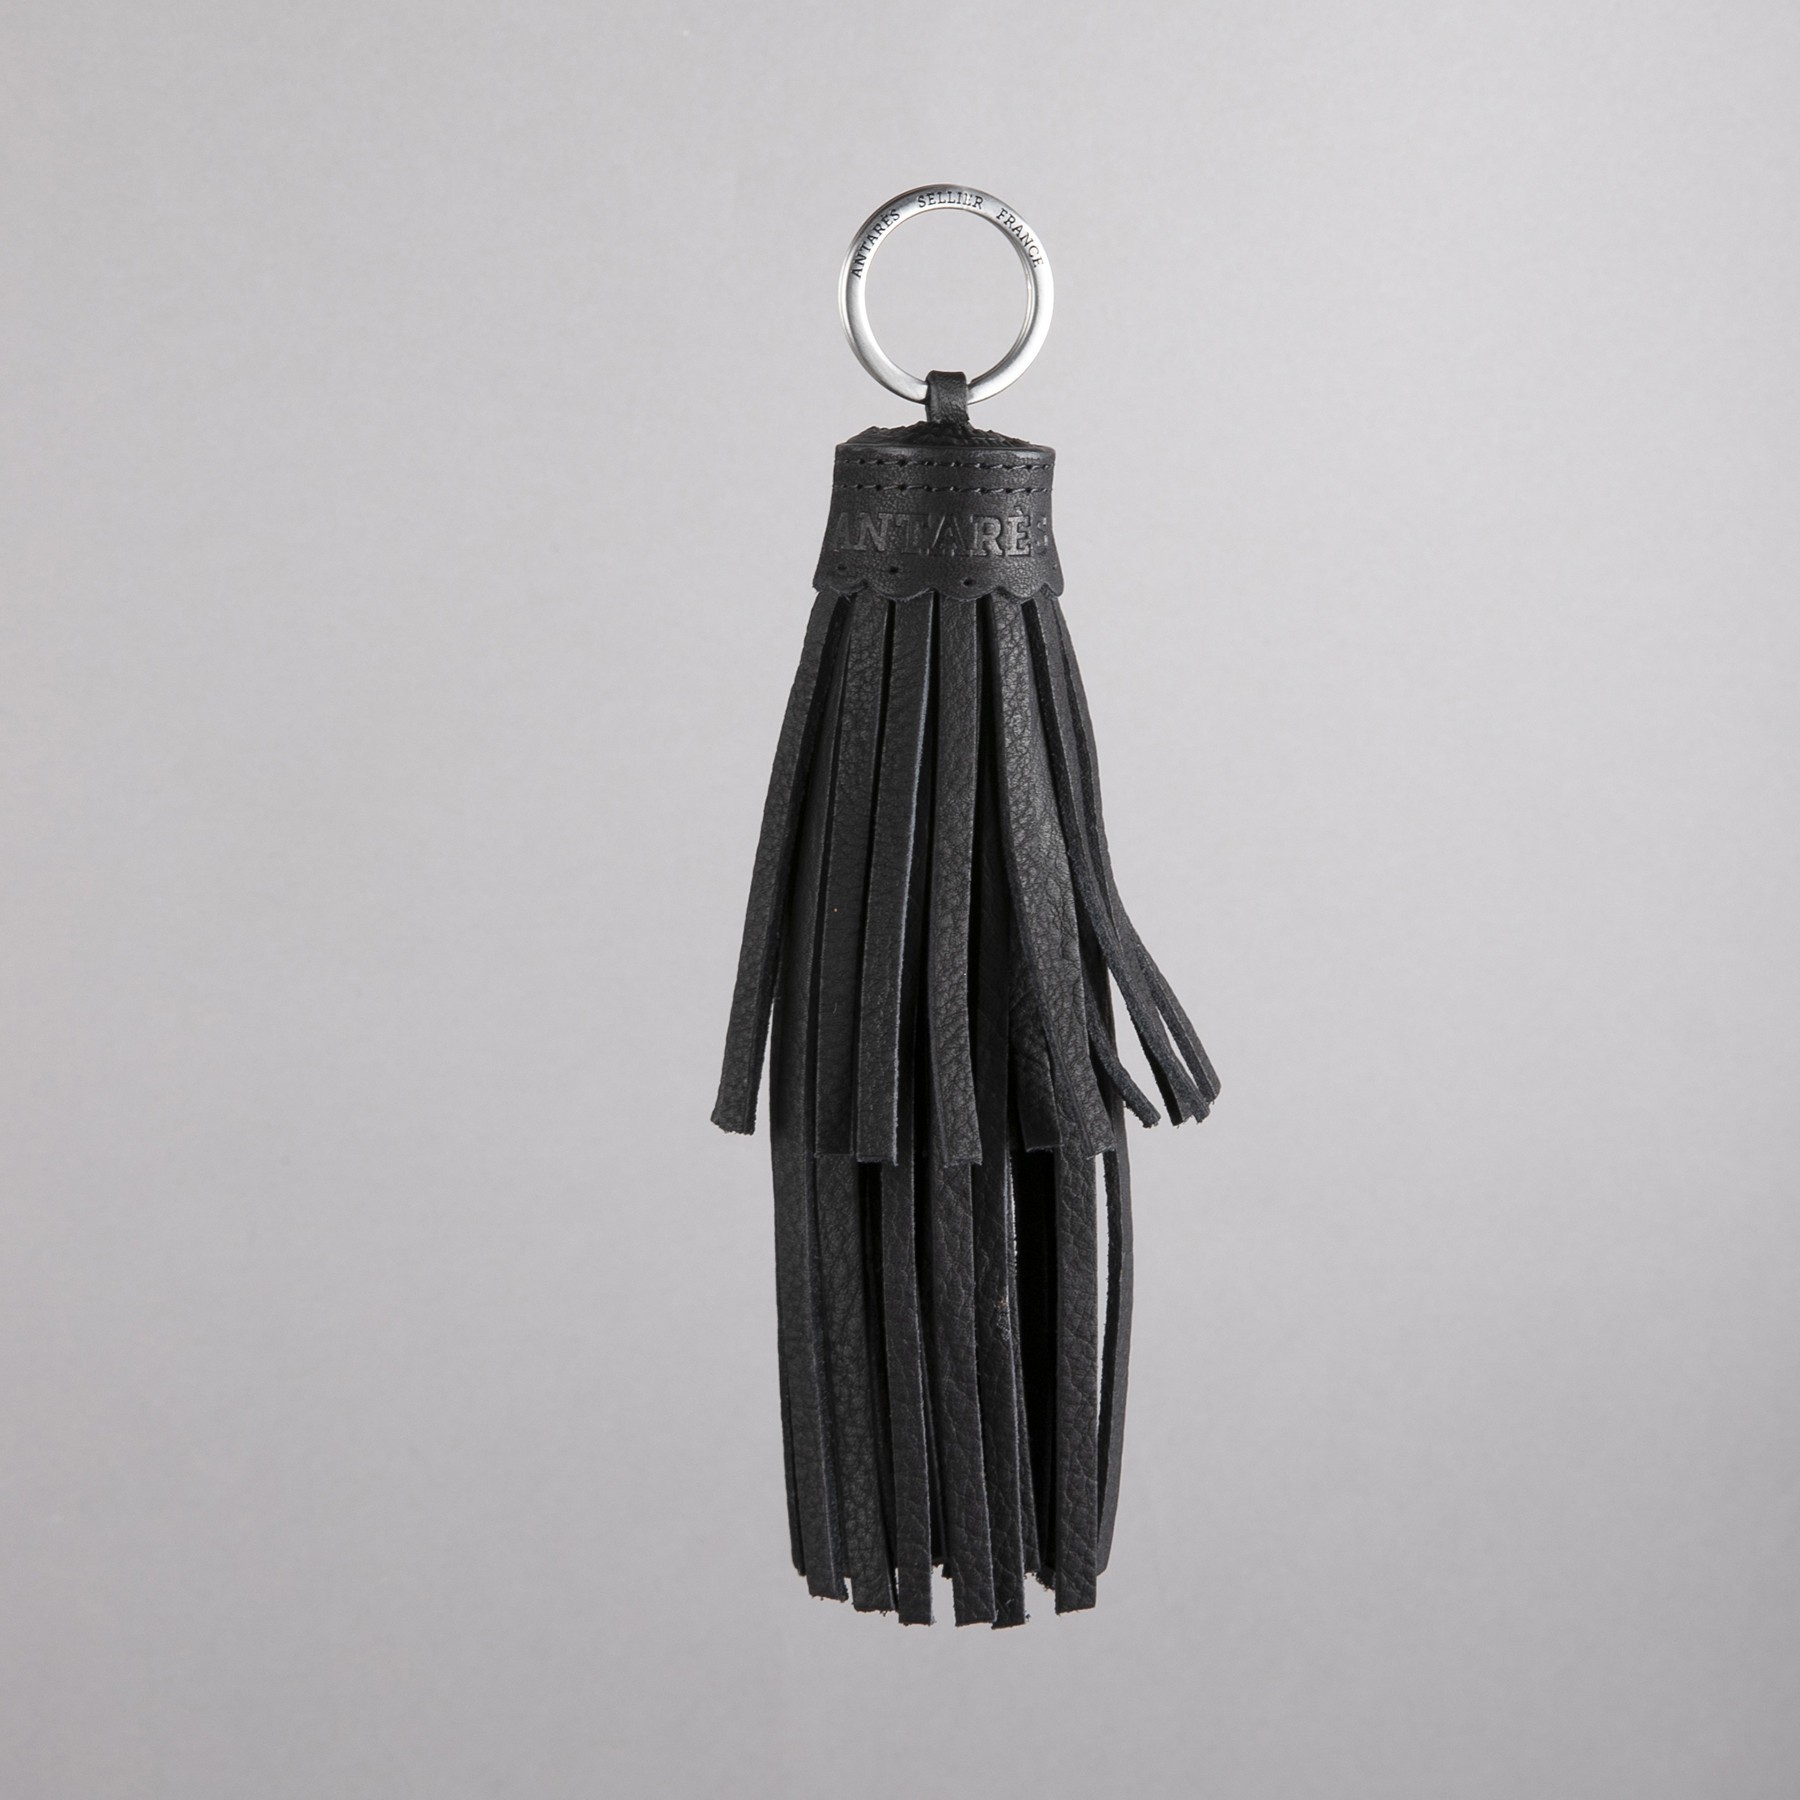 Petite Maroquinerie et Accessoire,Porte-clés en métal avec logo de